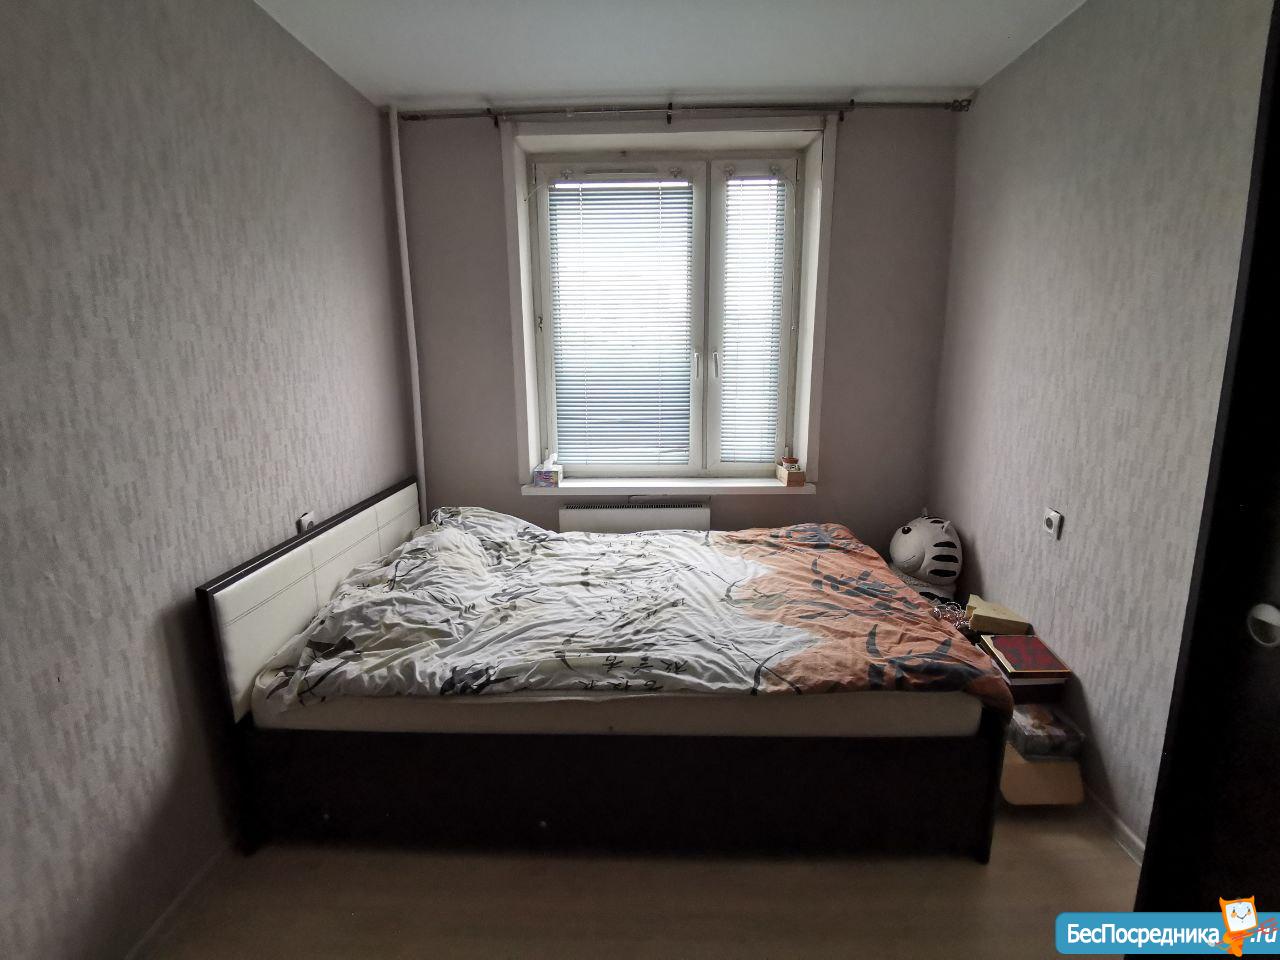 Савеловский район квартиру 1 комната